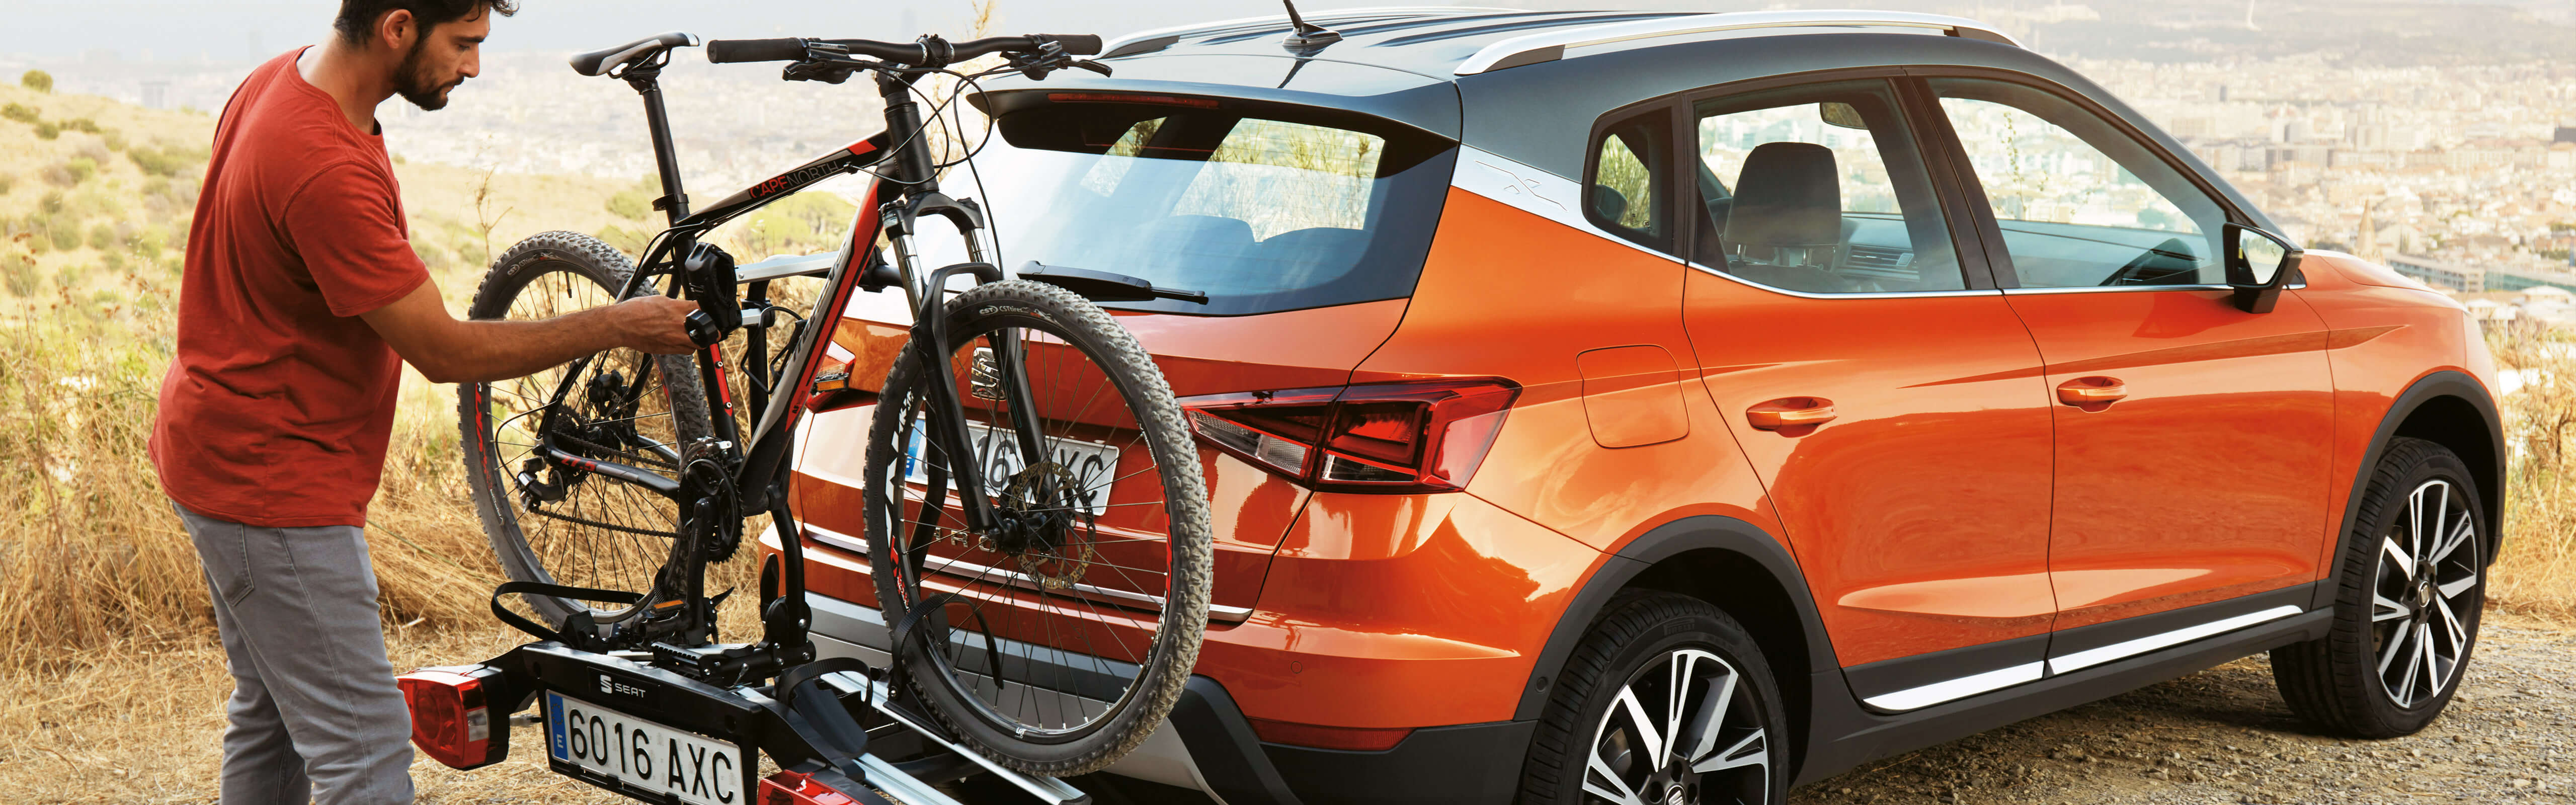 orange SEAT with car towbar mounted bike rack